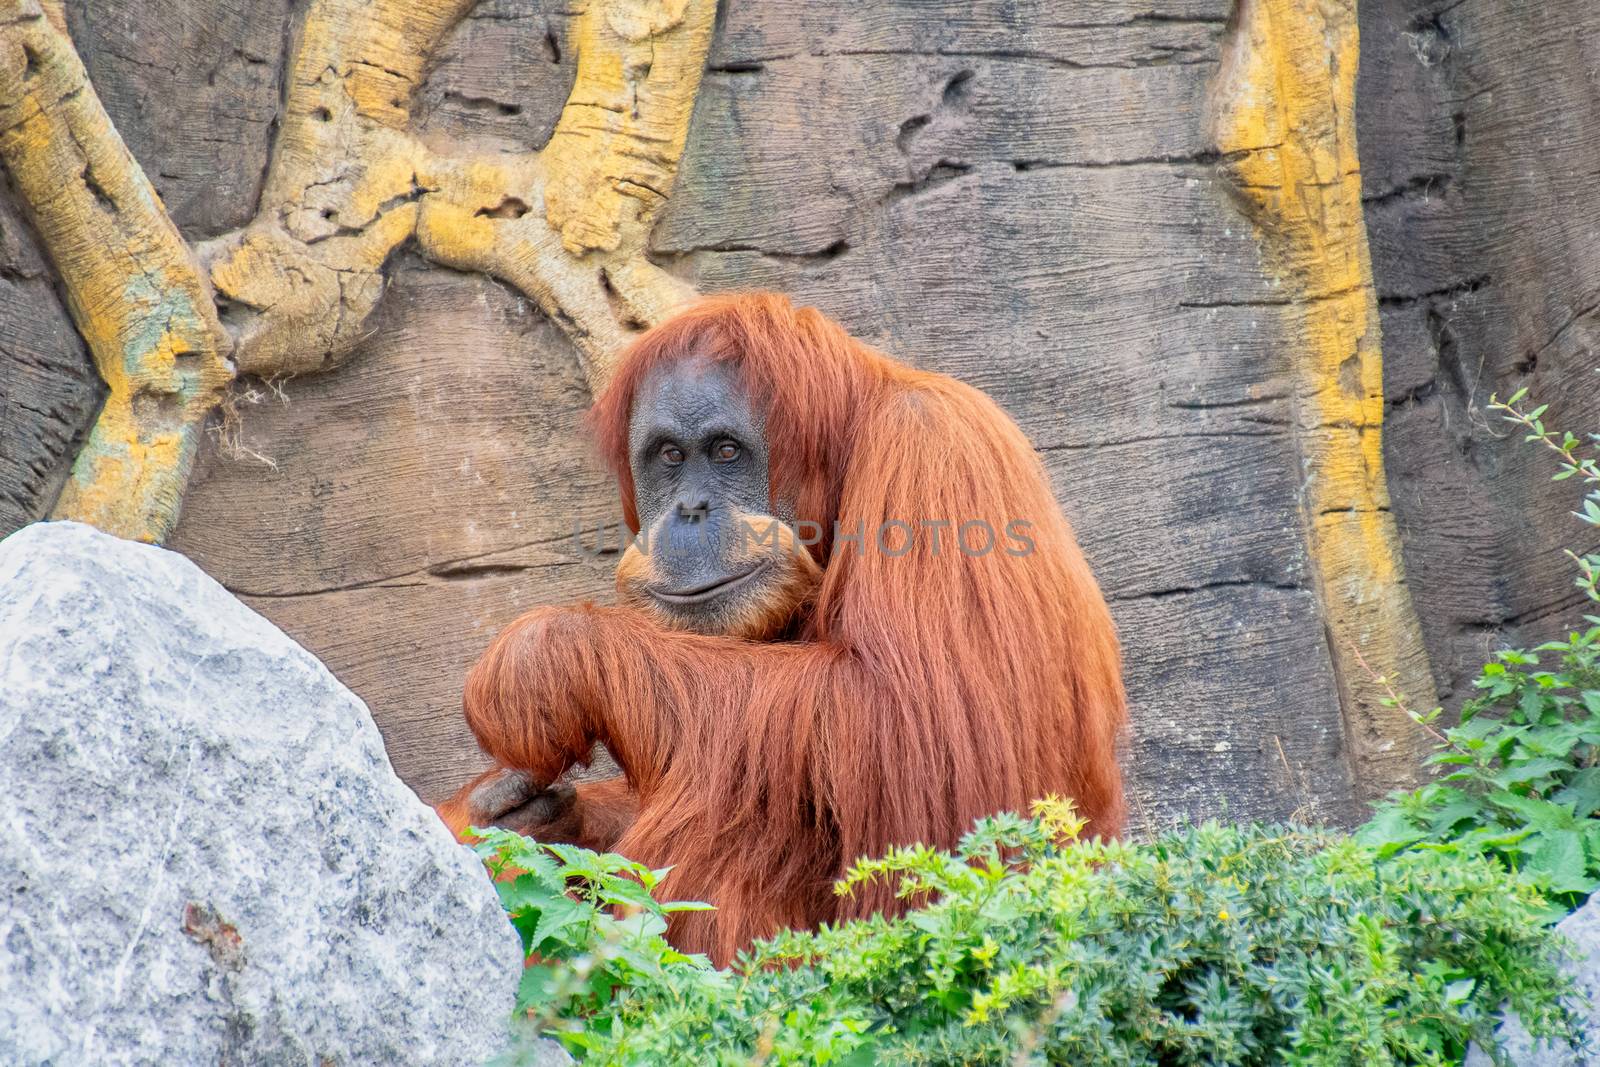 Orangutan sitting down while eating some fruit